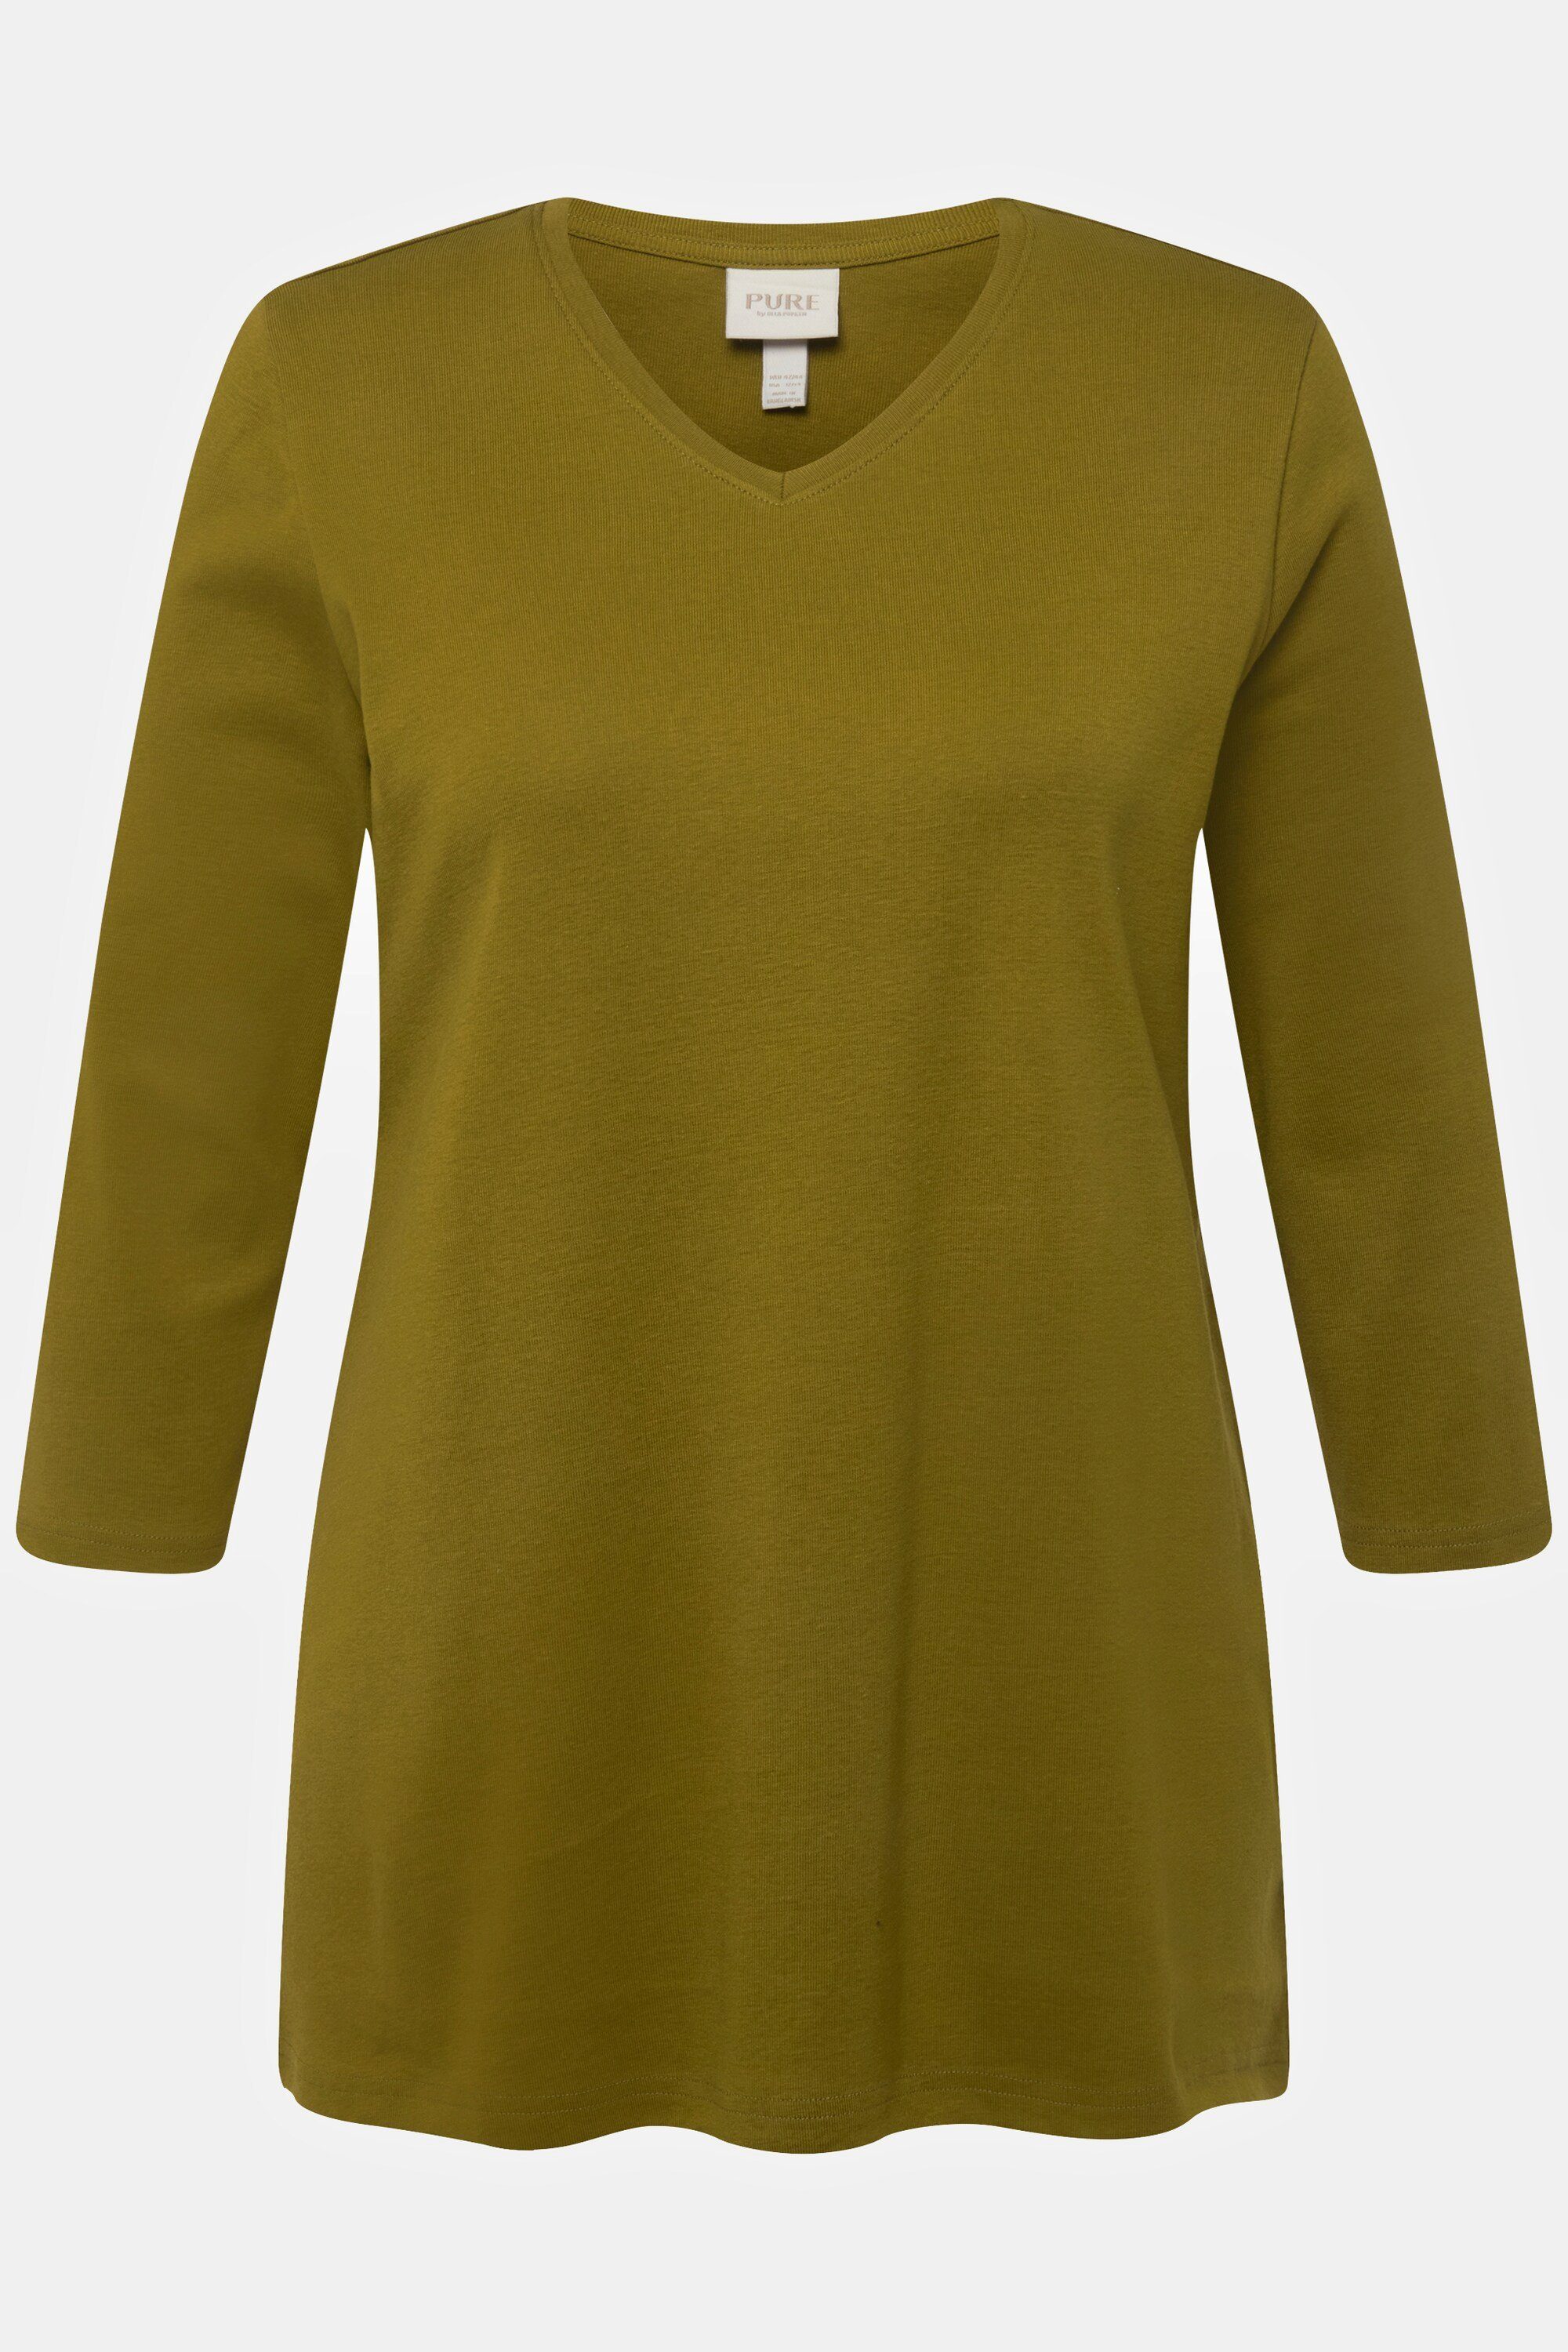 Ulla Popken Rundhalsshirt Shirt Biobaumwolle gelbgrün V-Ausschnitt Rippjersey 3/4-Arm